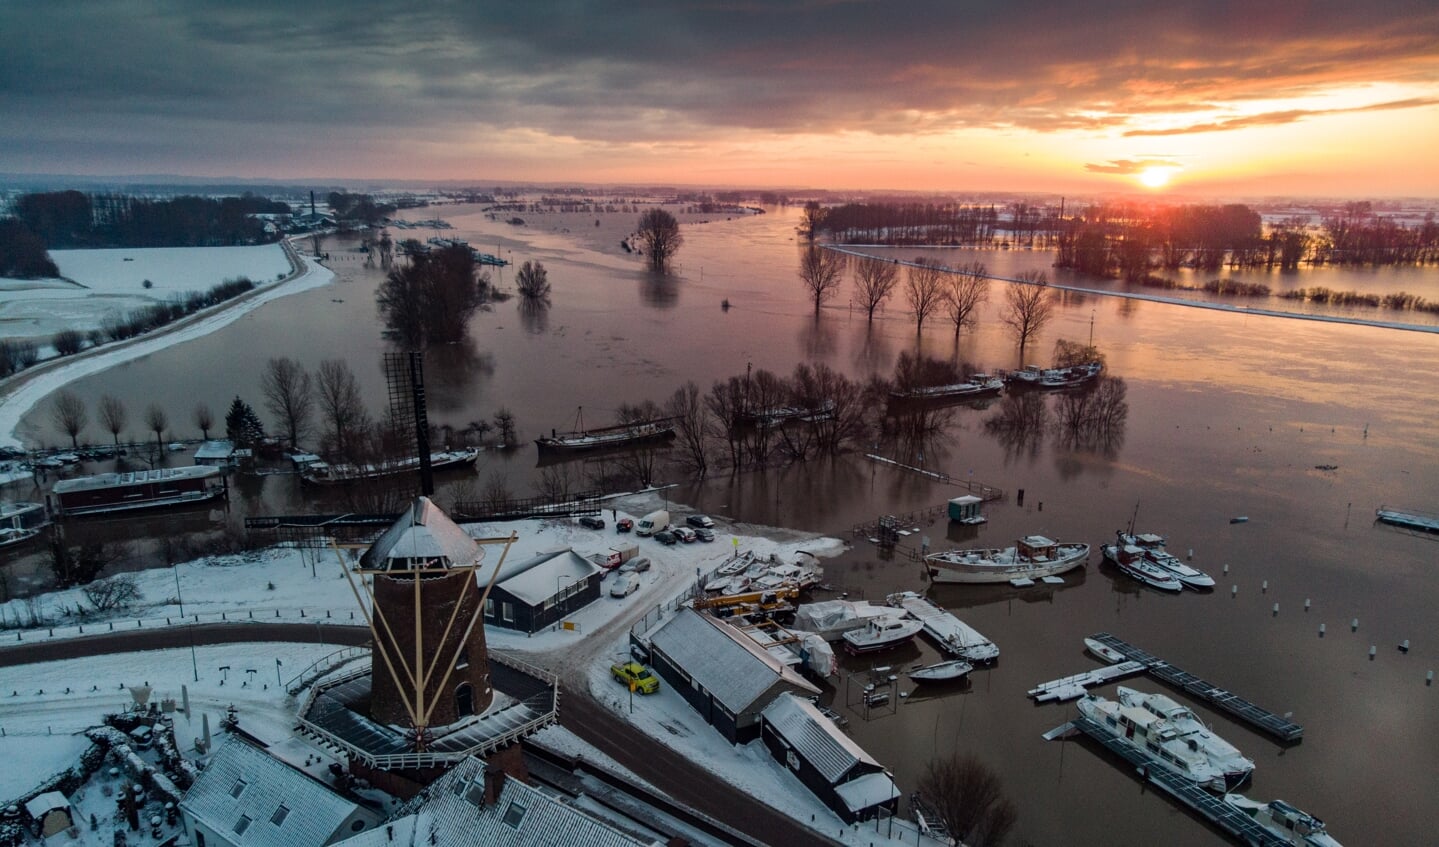 Waterschap voorspelt dat de situatie na het weekend voor Wijk bij Duurstede hetzelfde wordt zoals hier op de foto in januari 2021 (archieffoto)